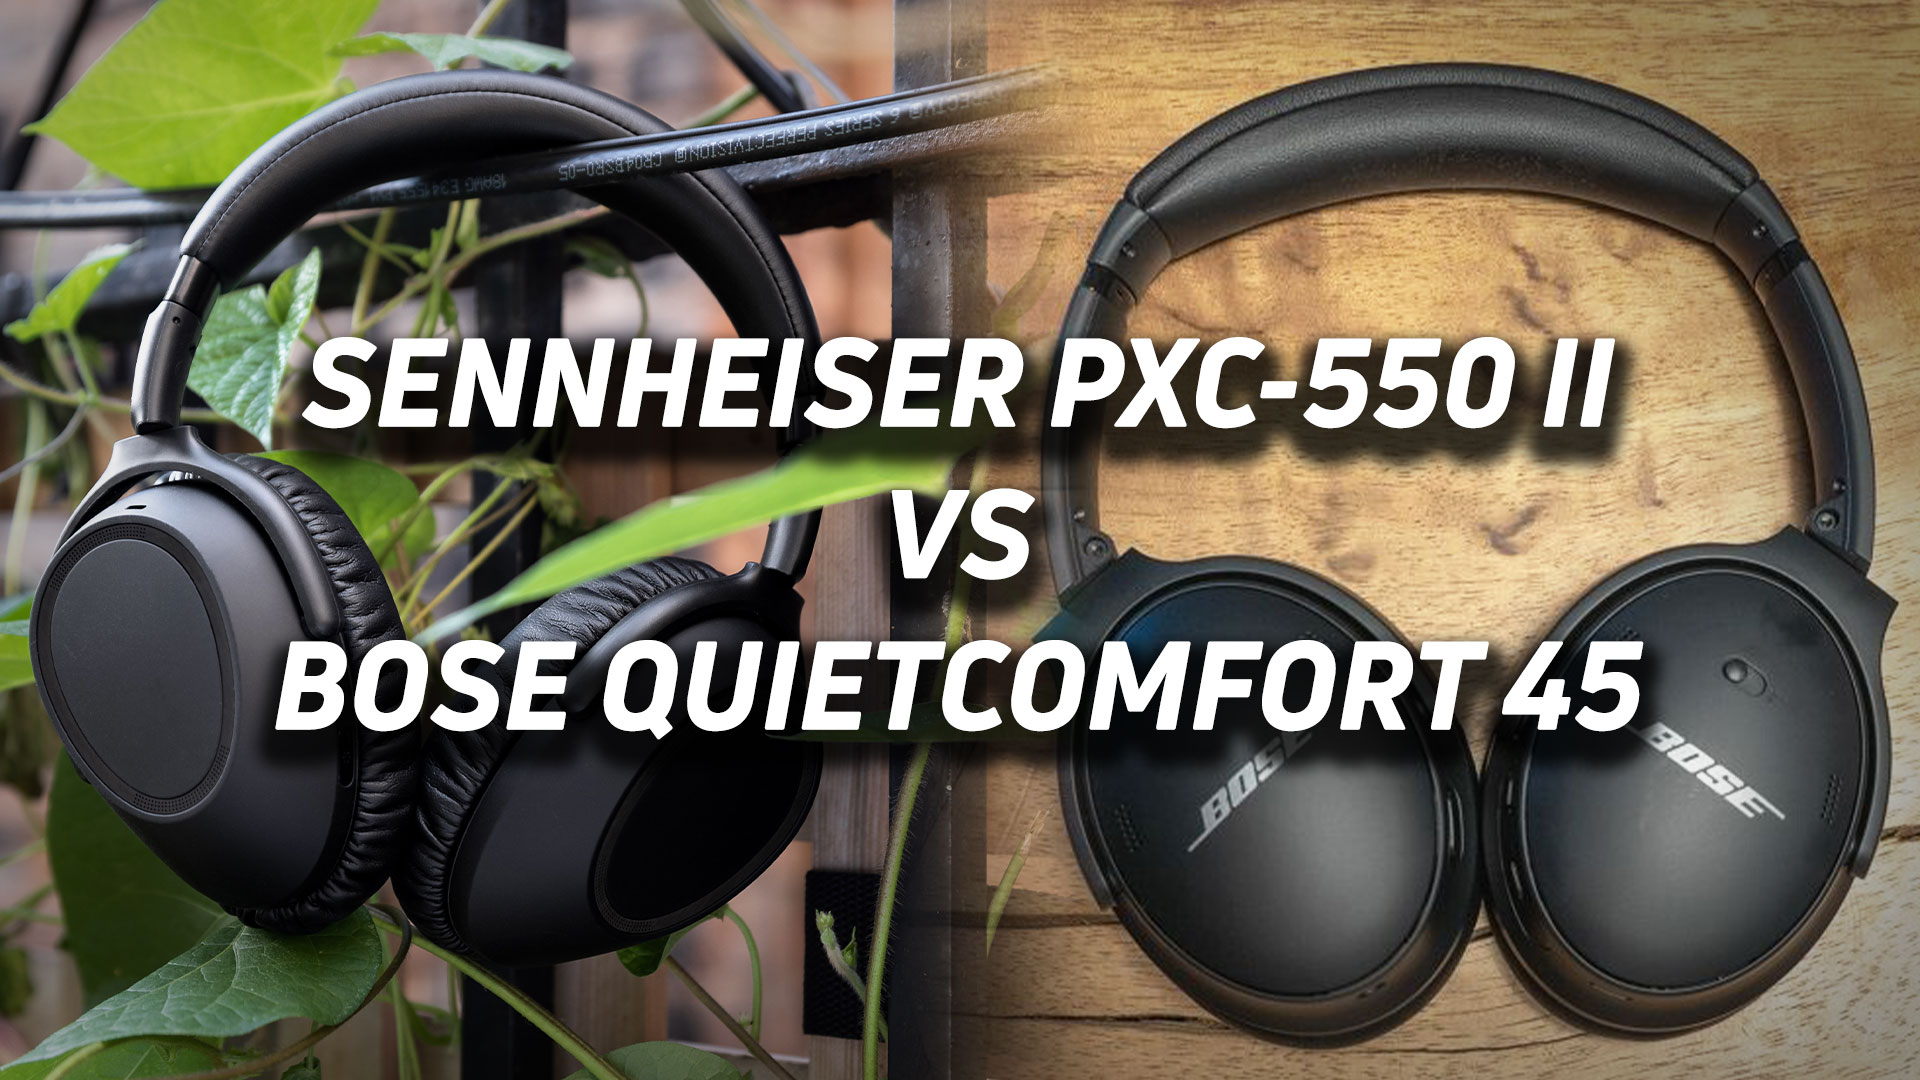 The Sennheiser PXC 550-II next to the Bose QuietComfort 45 headphones.